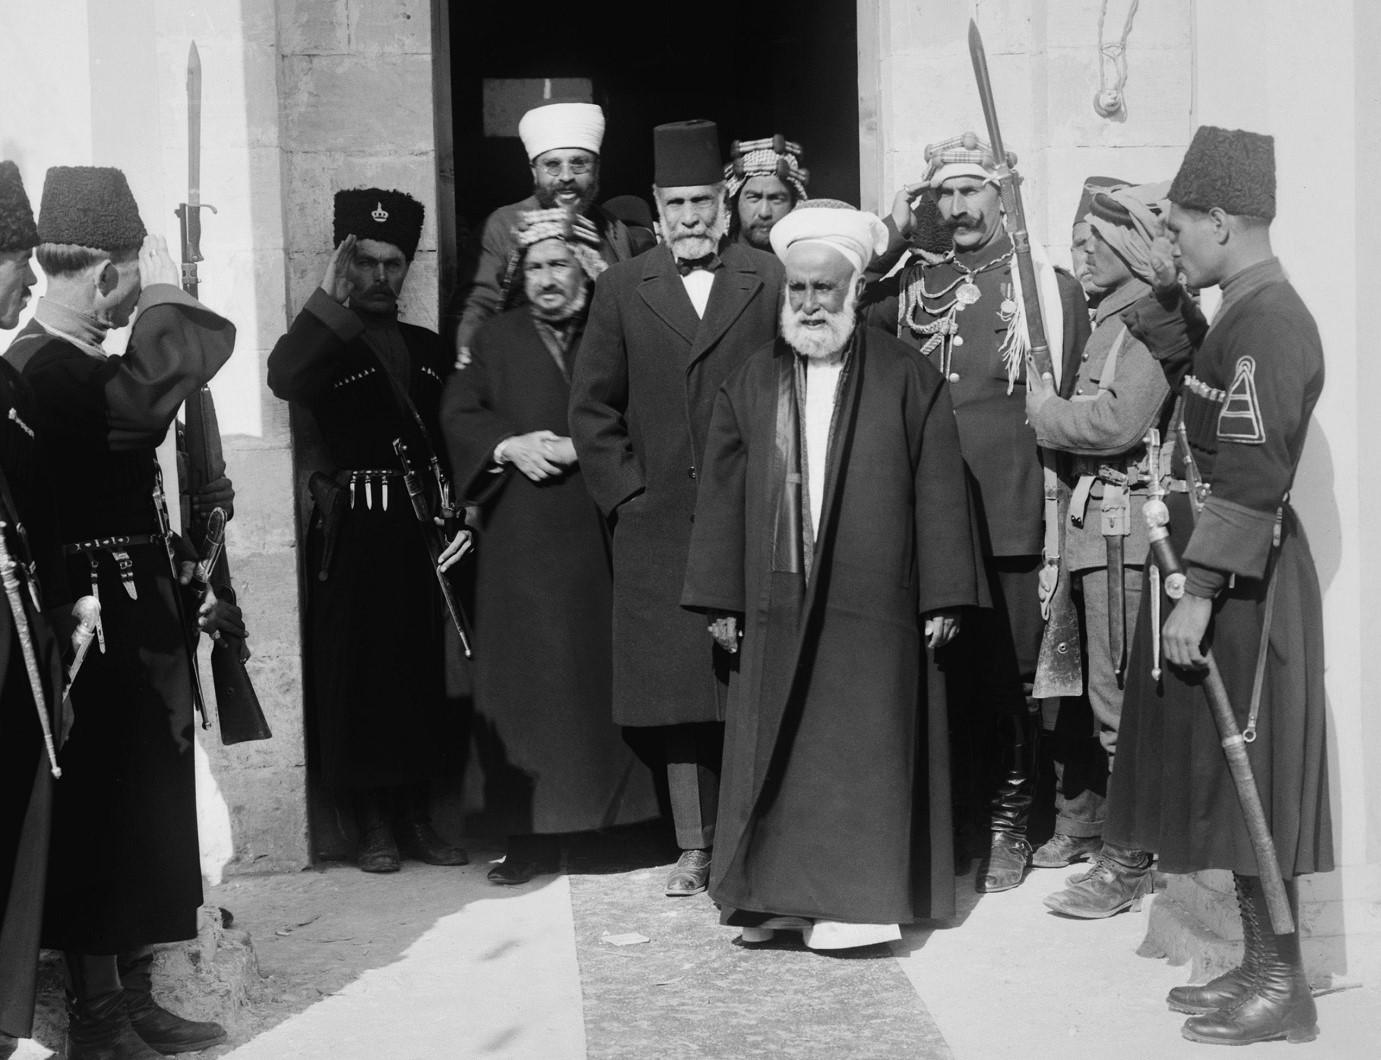 الشريف الحسين بن علي، شريف مكة، في عمان عام 1921. (Historical Everett/Shutterstock.com)